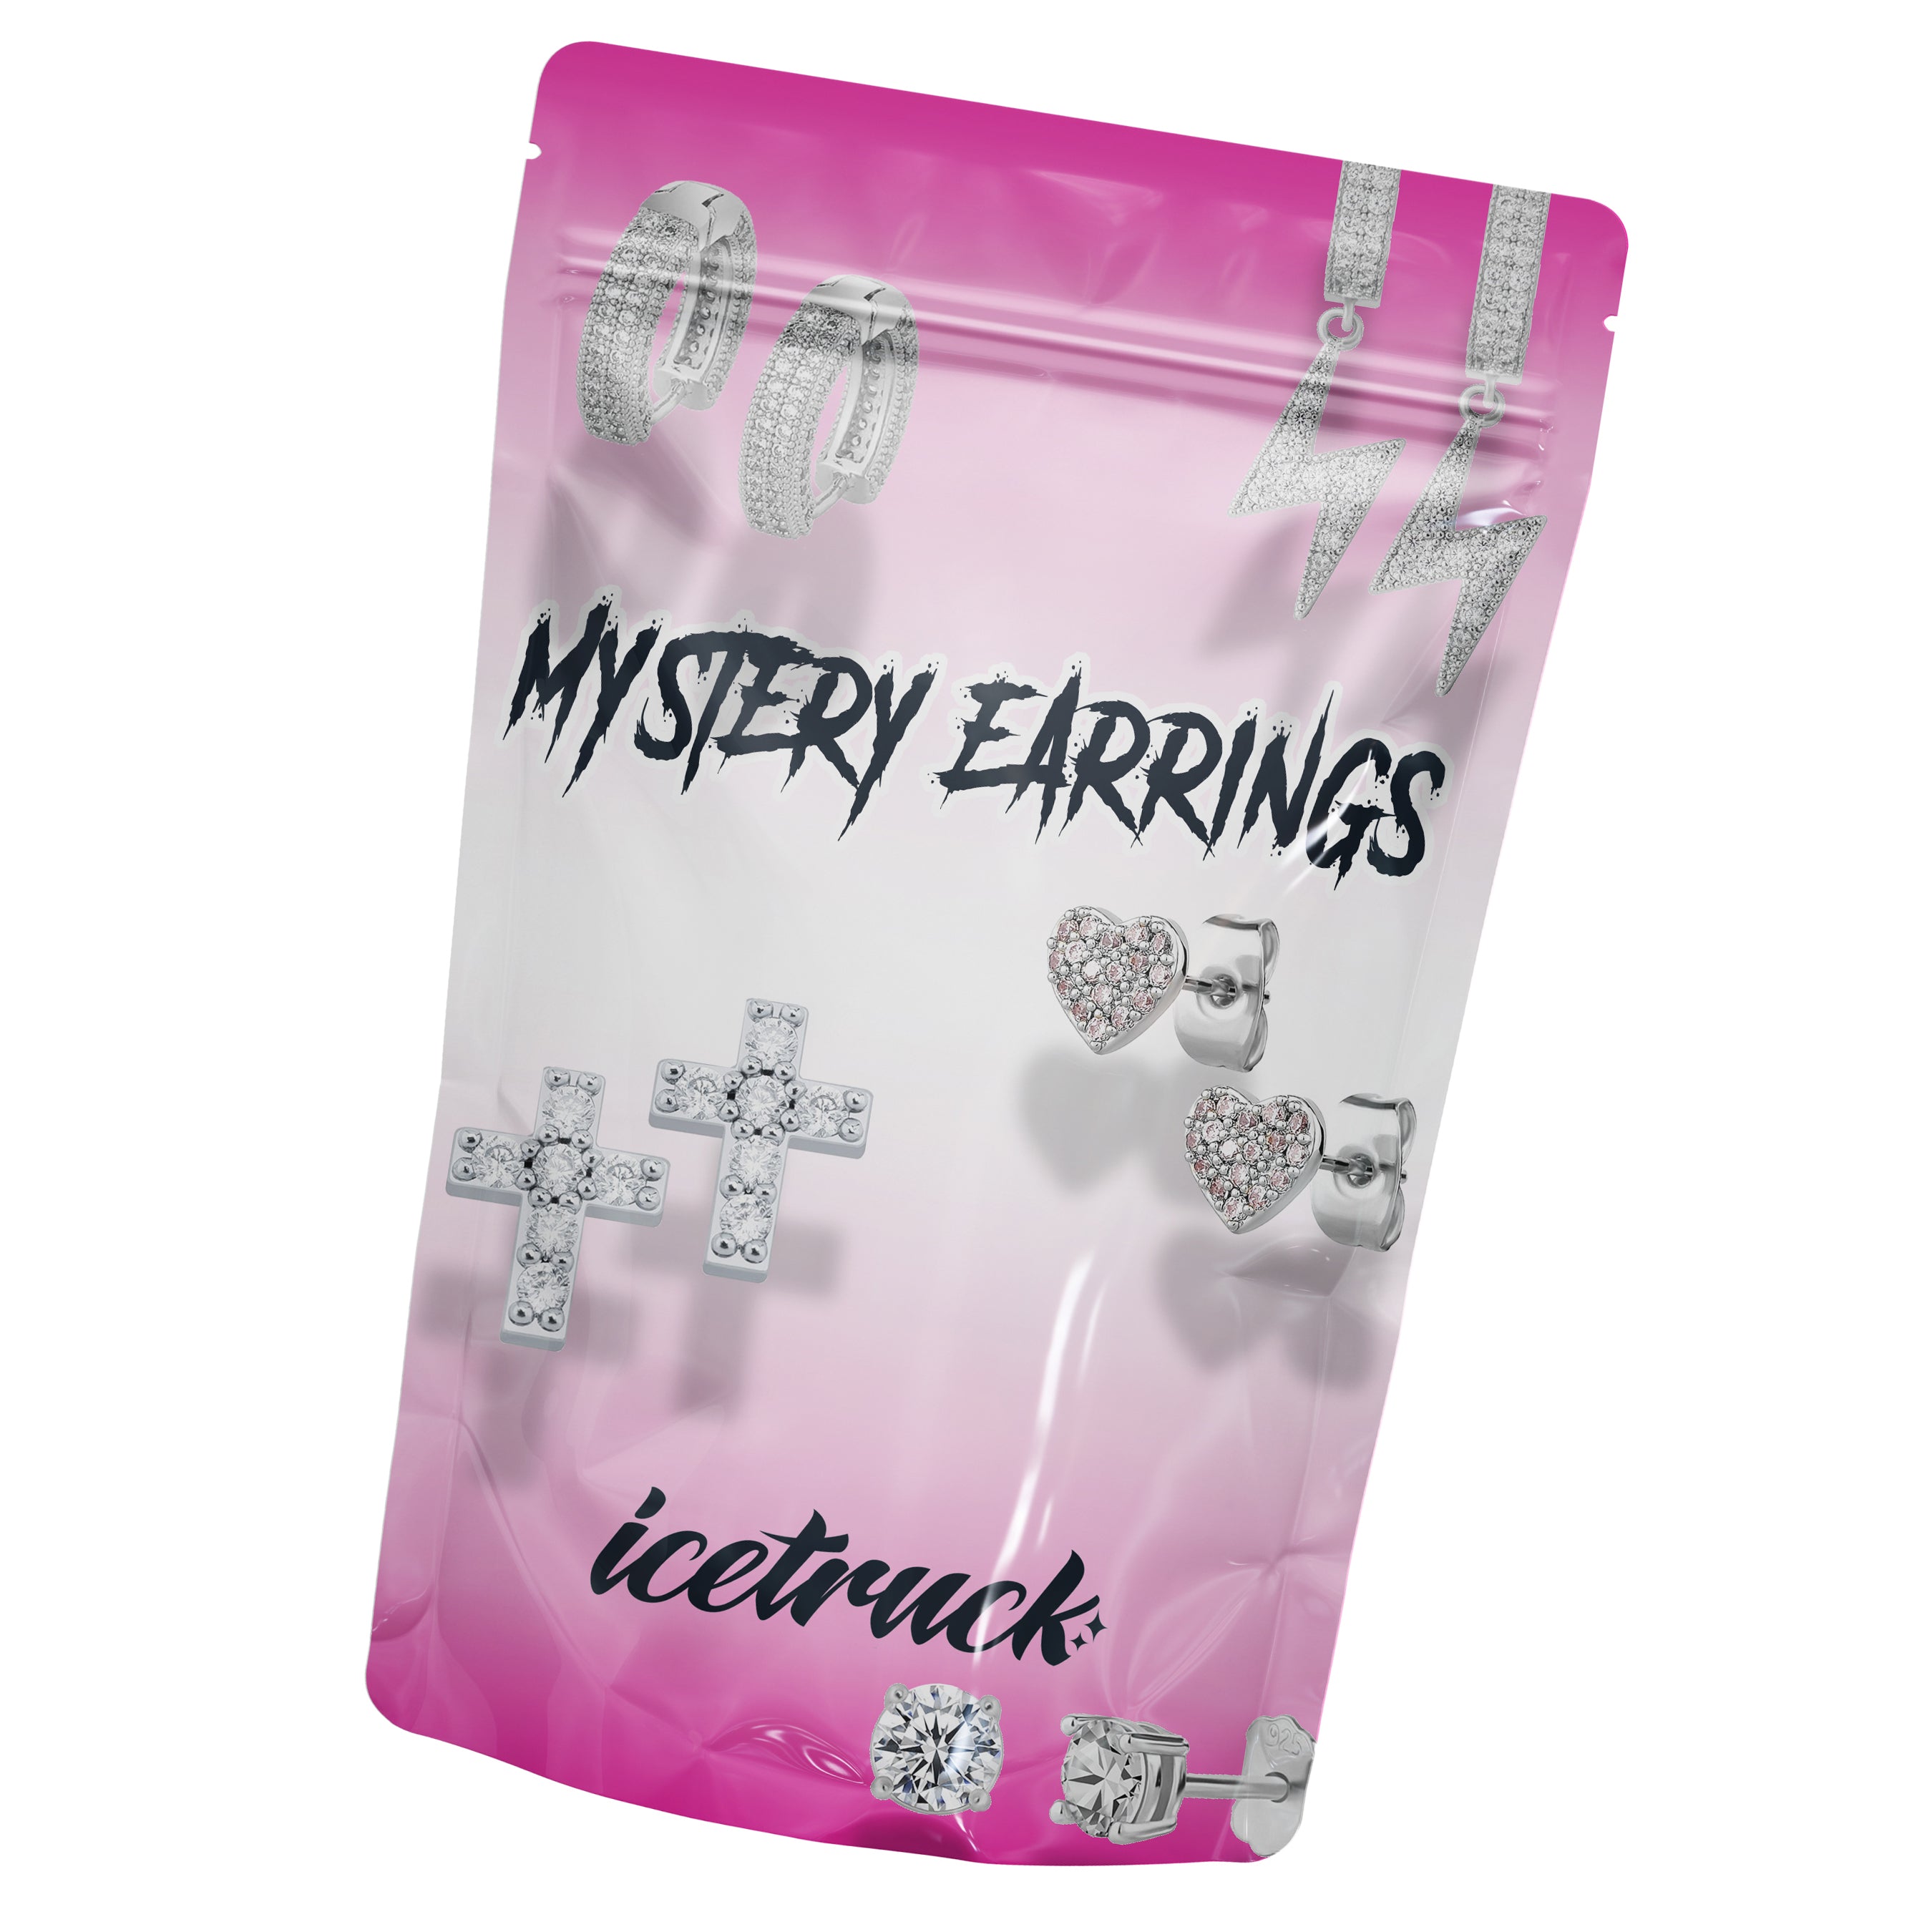 Mystery Earrings